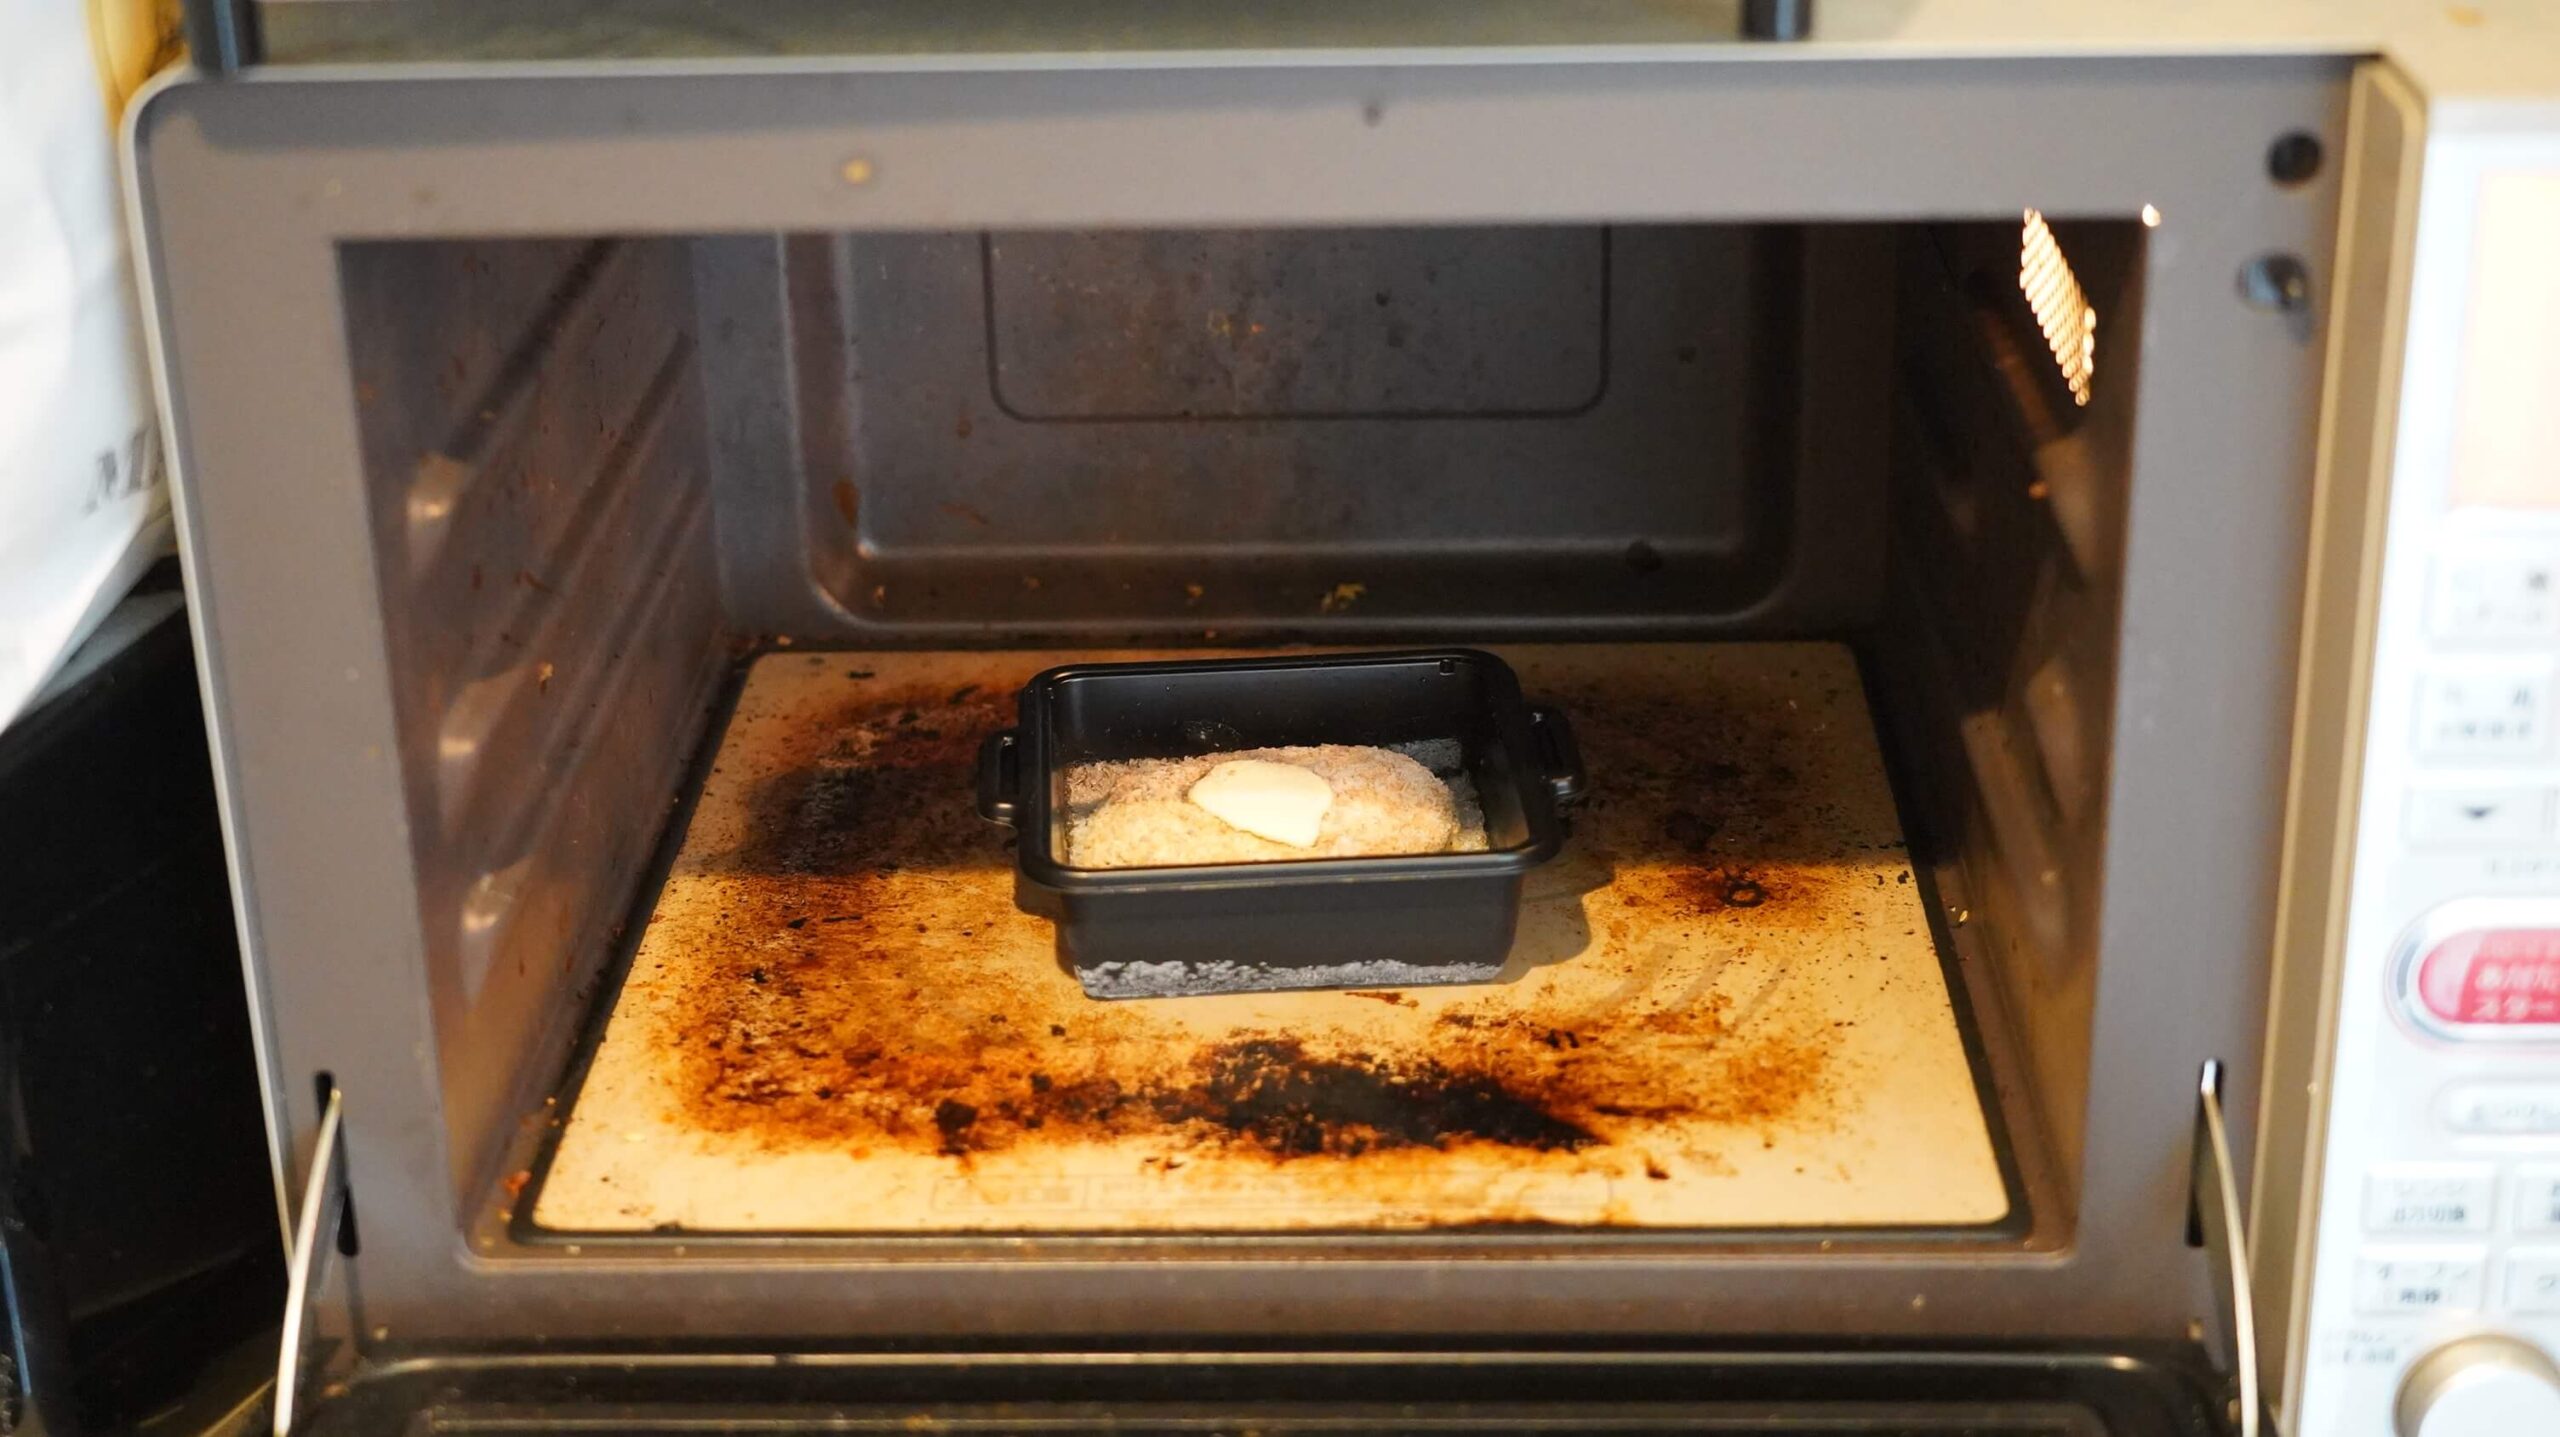 味の素の冷凍食品「ザ★ハンバーグ」を電子レンジで加熱している写真